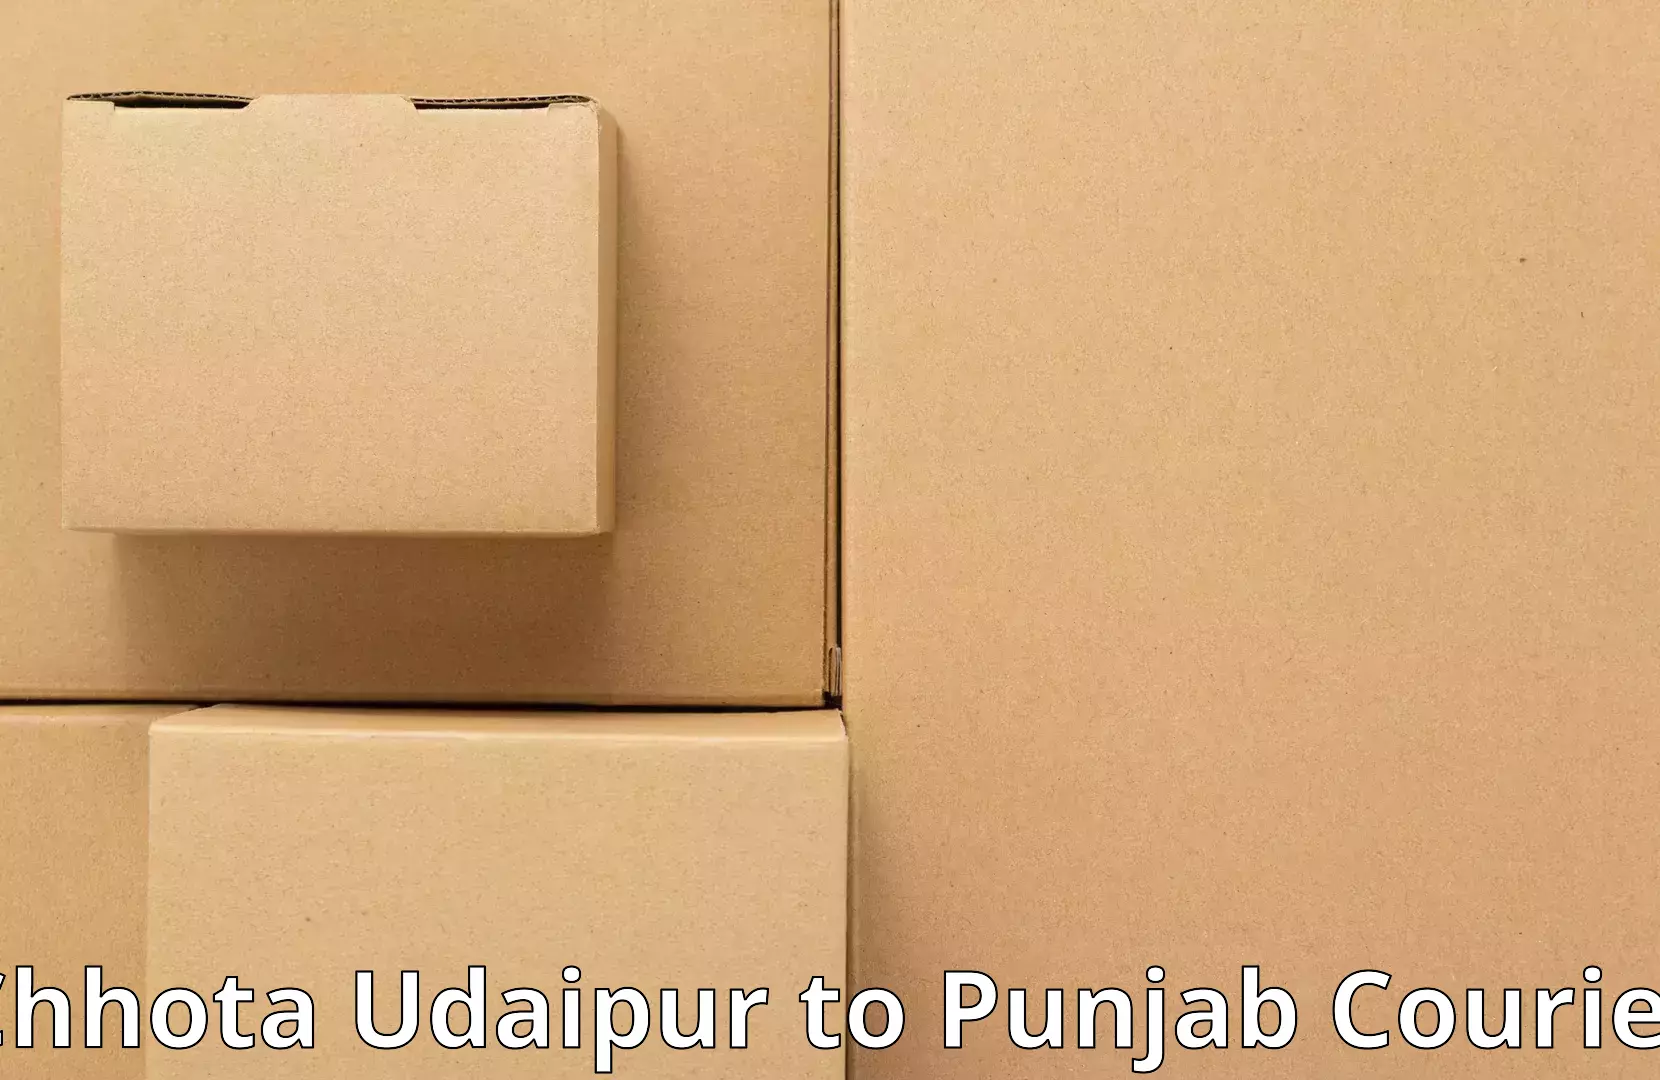 Reliable movers Chhota Udaipur to Batala